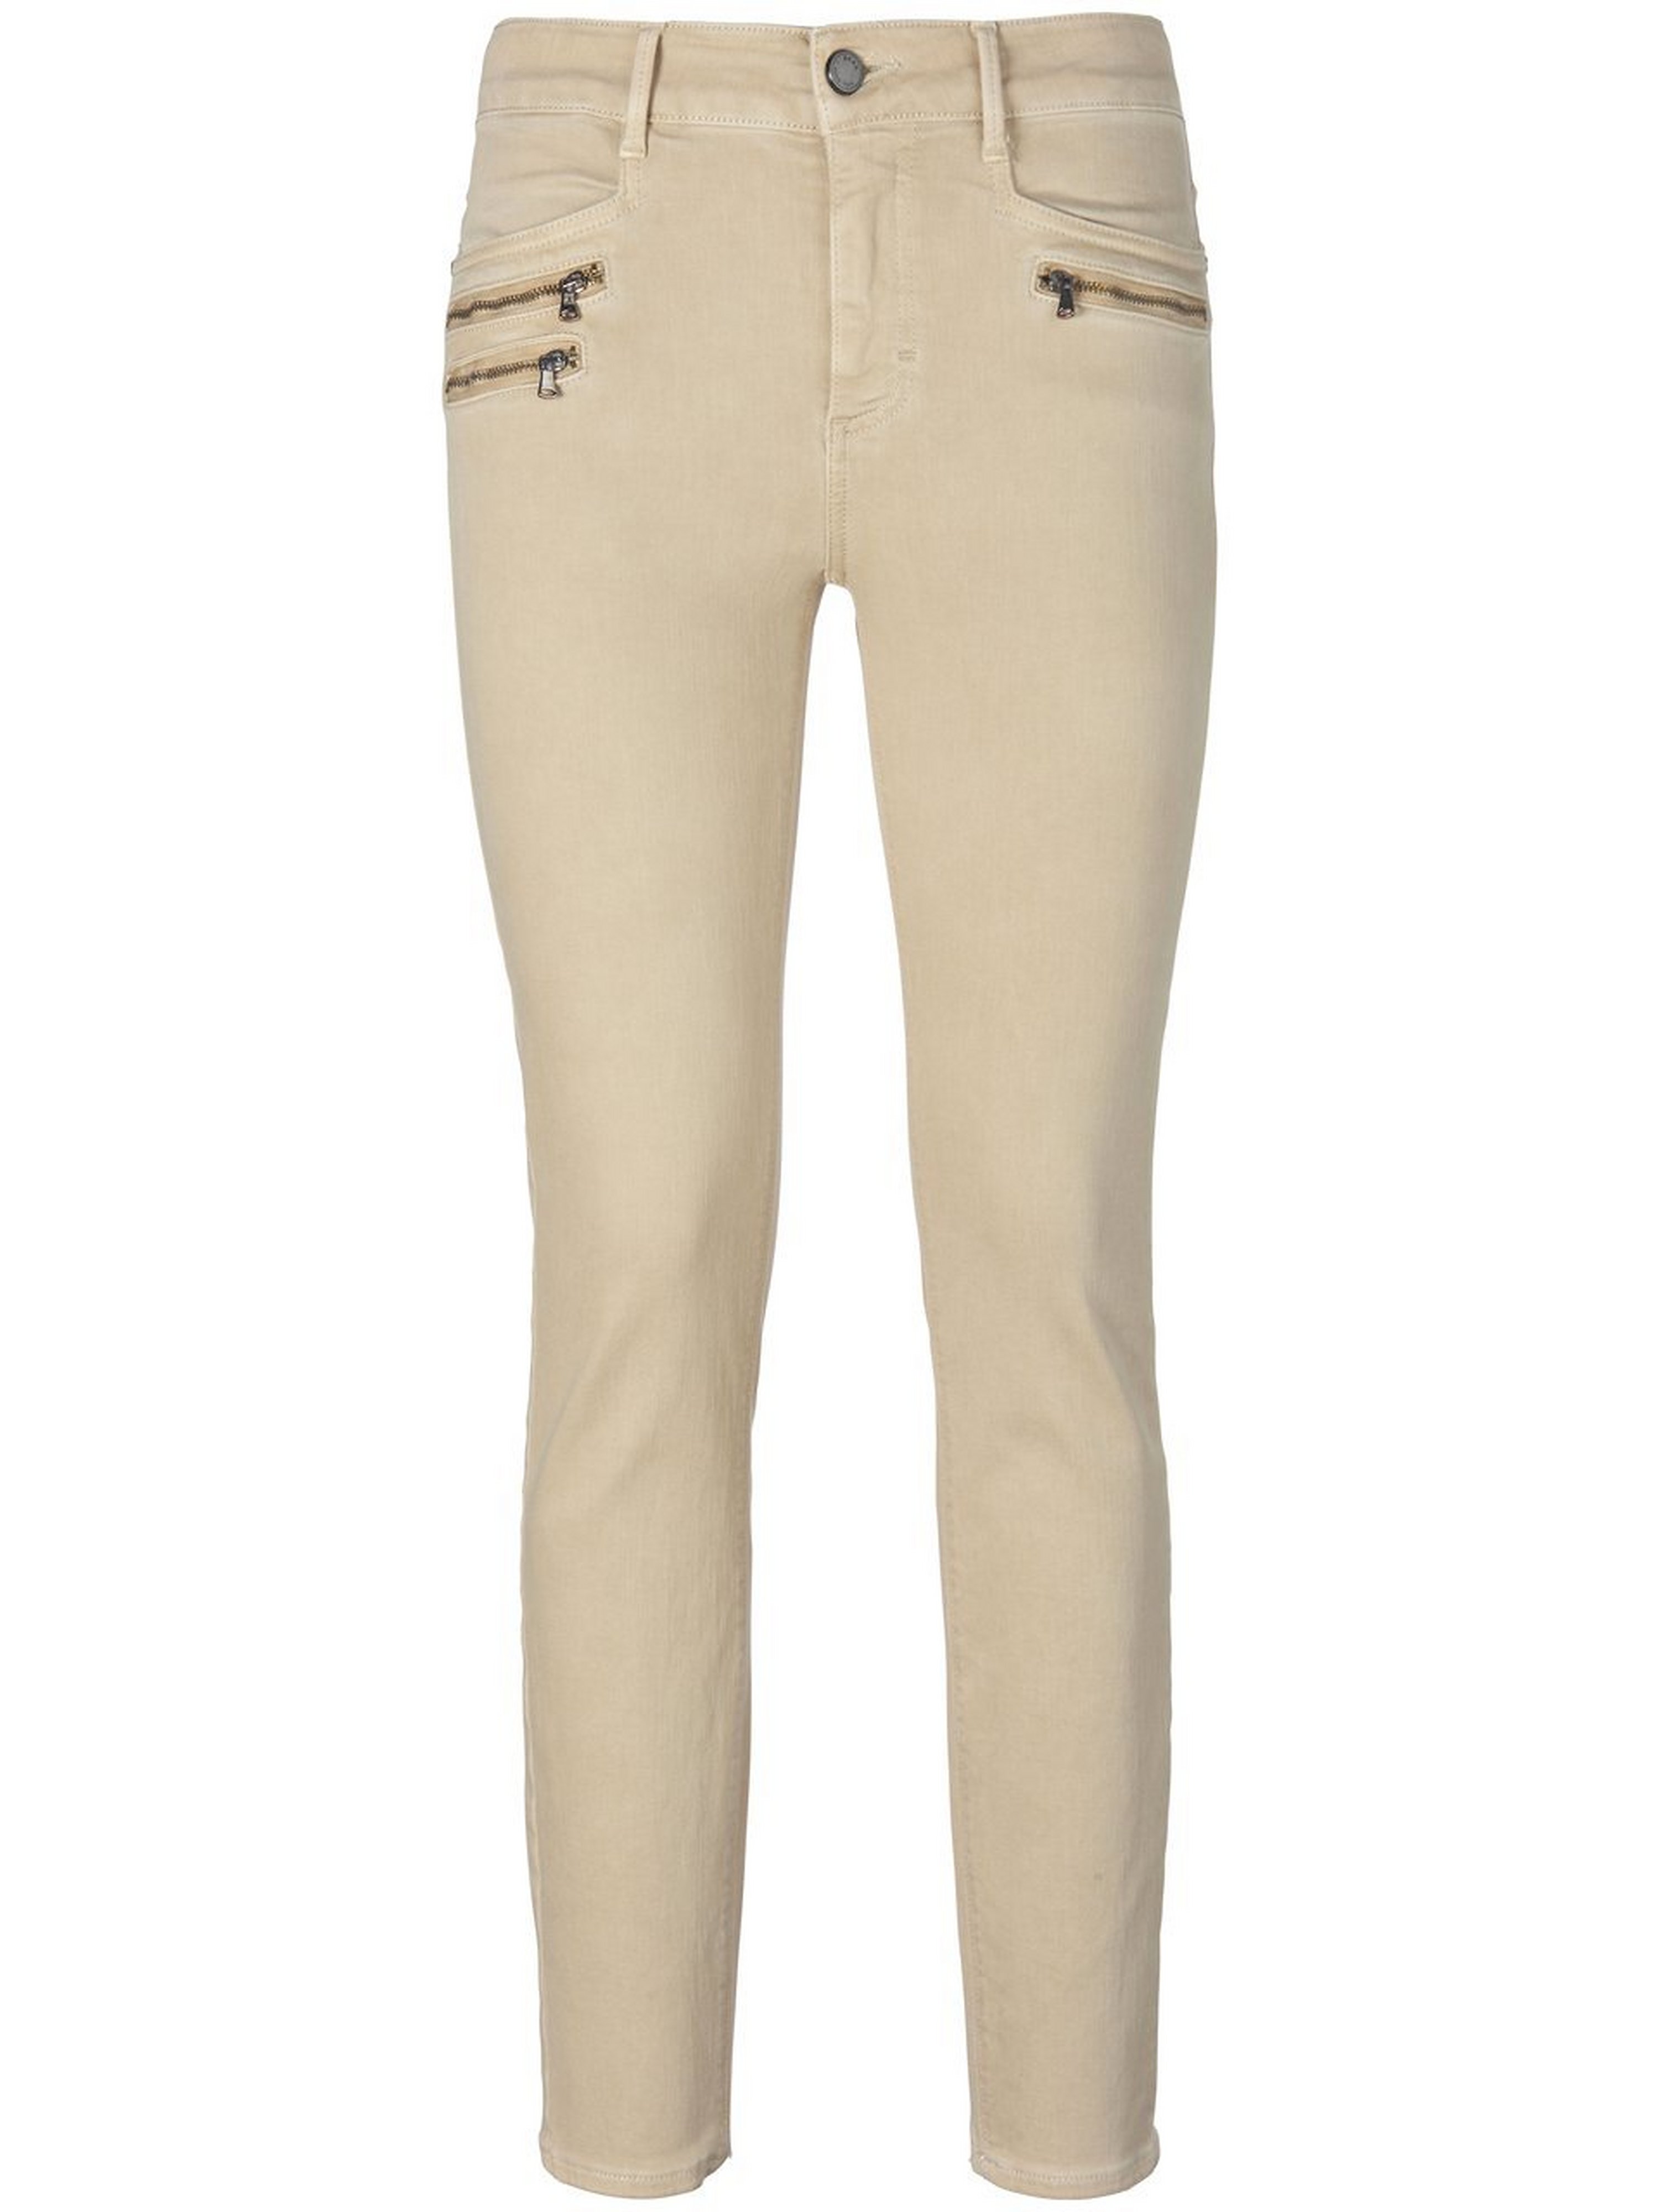 Skinny jeans model Ana Van Brax Feel Good beige